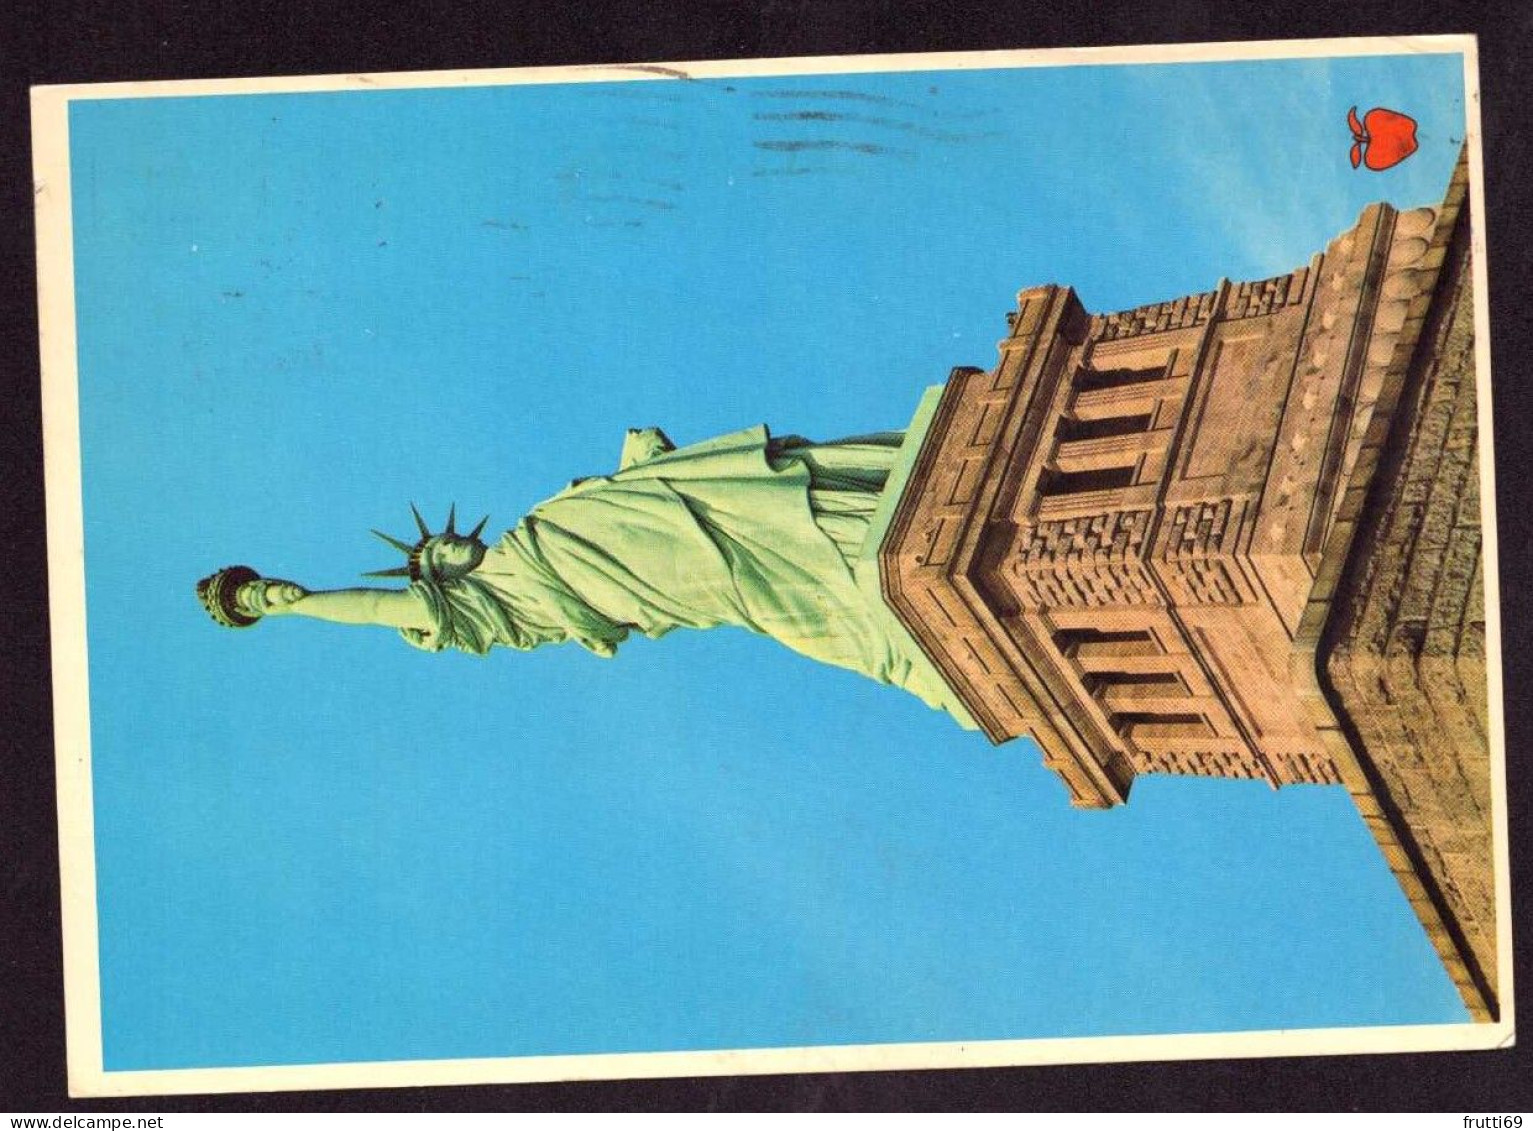 AK 127459 USA - New York City - Statue Of Liberty - Estatua De La Libertad